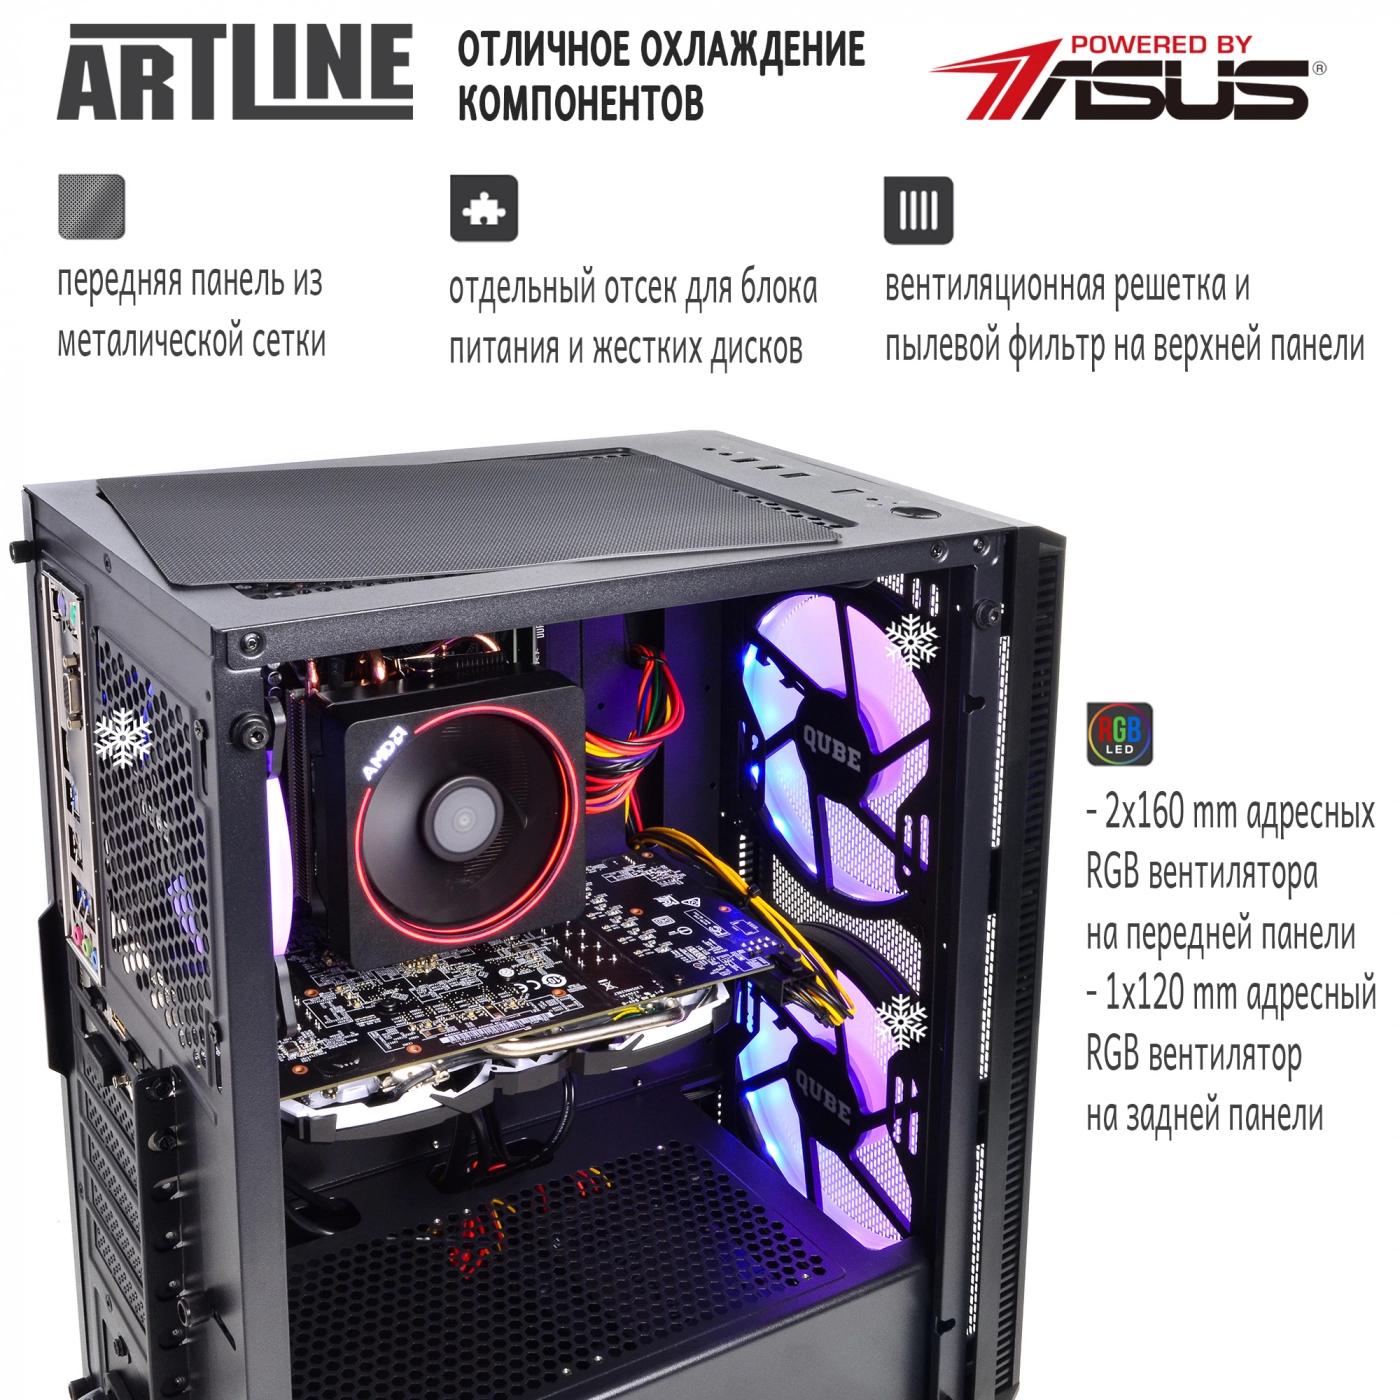 Купить Компьютер ARTLINE Gaming X45v21 - фото 2